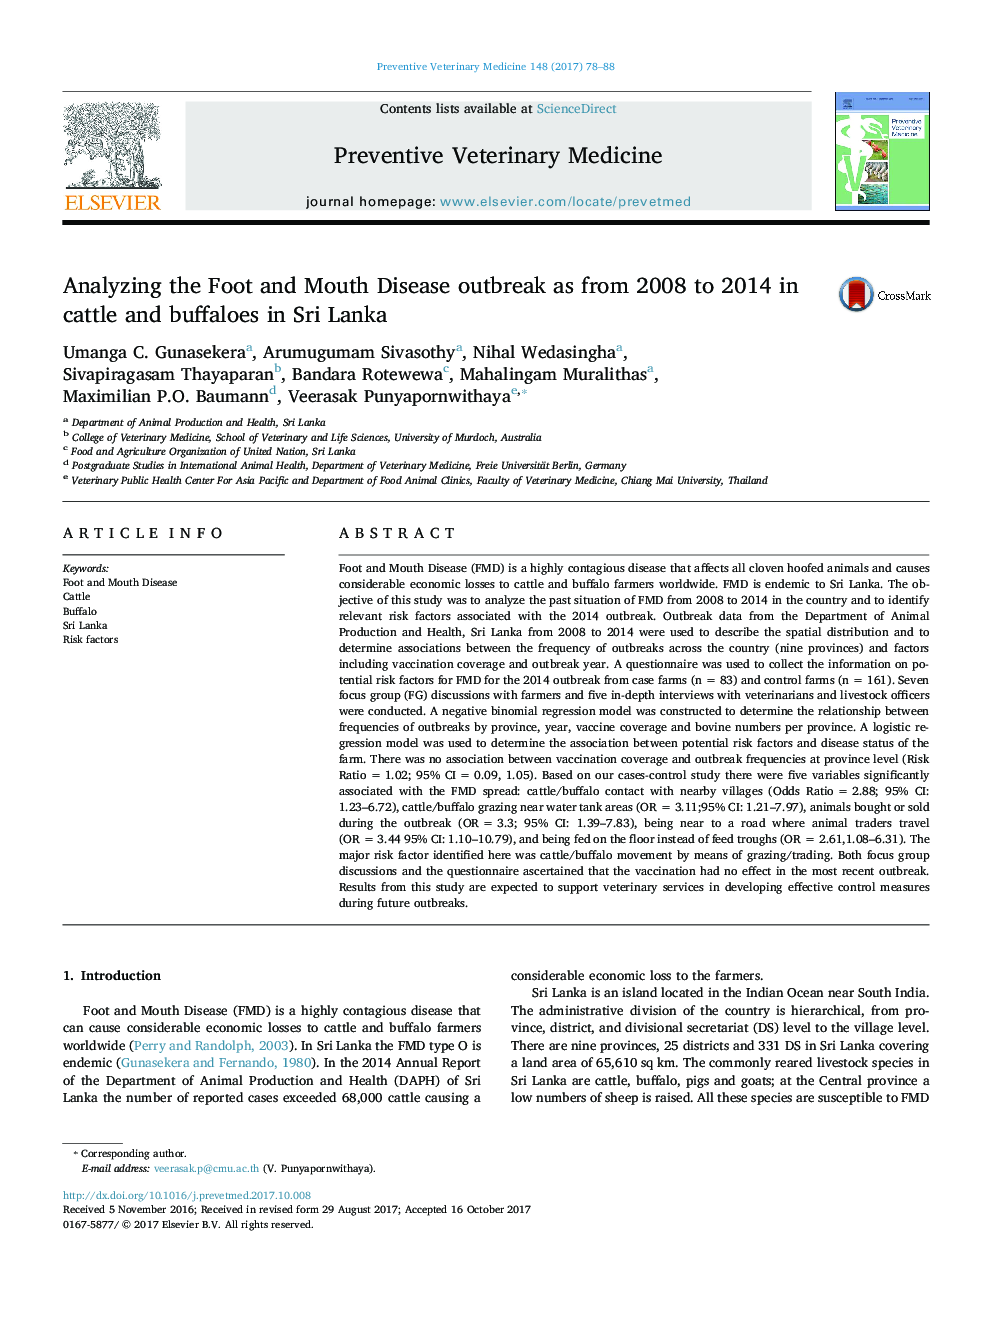 تجزیه و تحلیل شیوع بیماری های روده و دهان در سال های 2008 تا 2014 در گاو و بوفالو در سریلانکا 